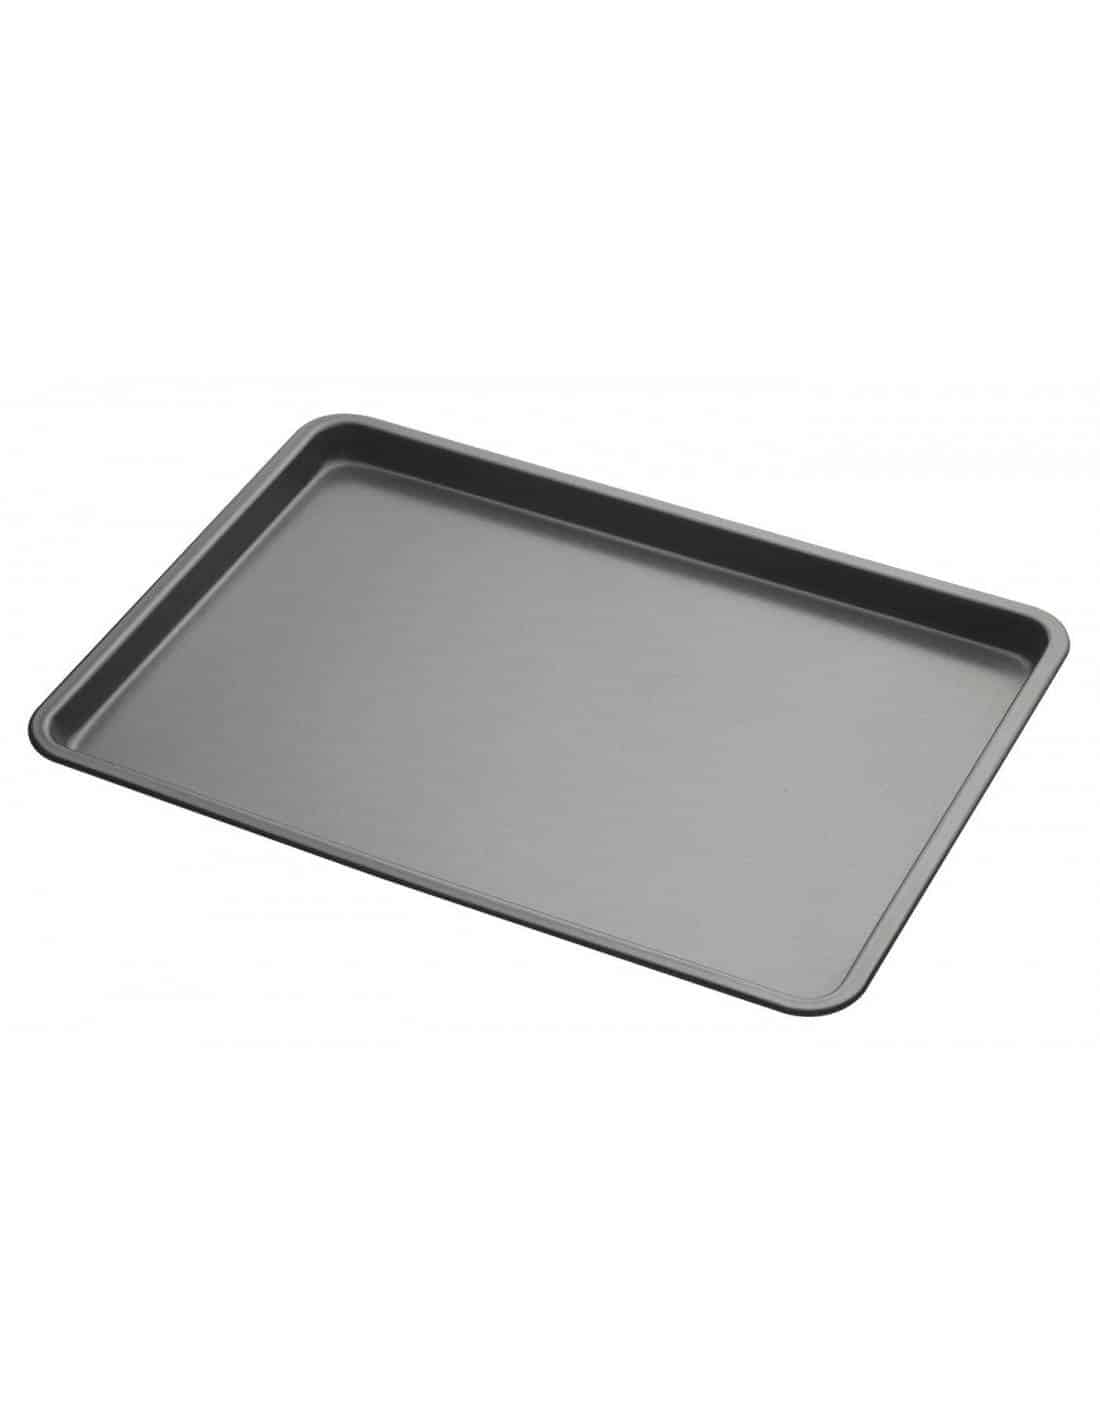  MasterClass 35 x 24 cm Baking/Roasting Tray with PFOA